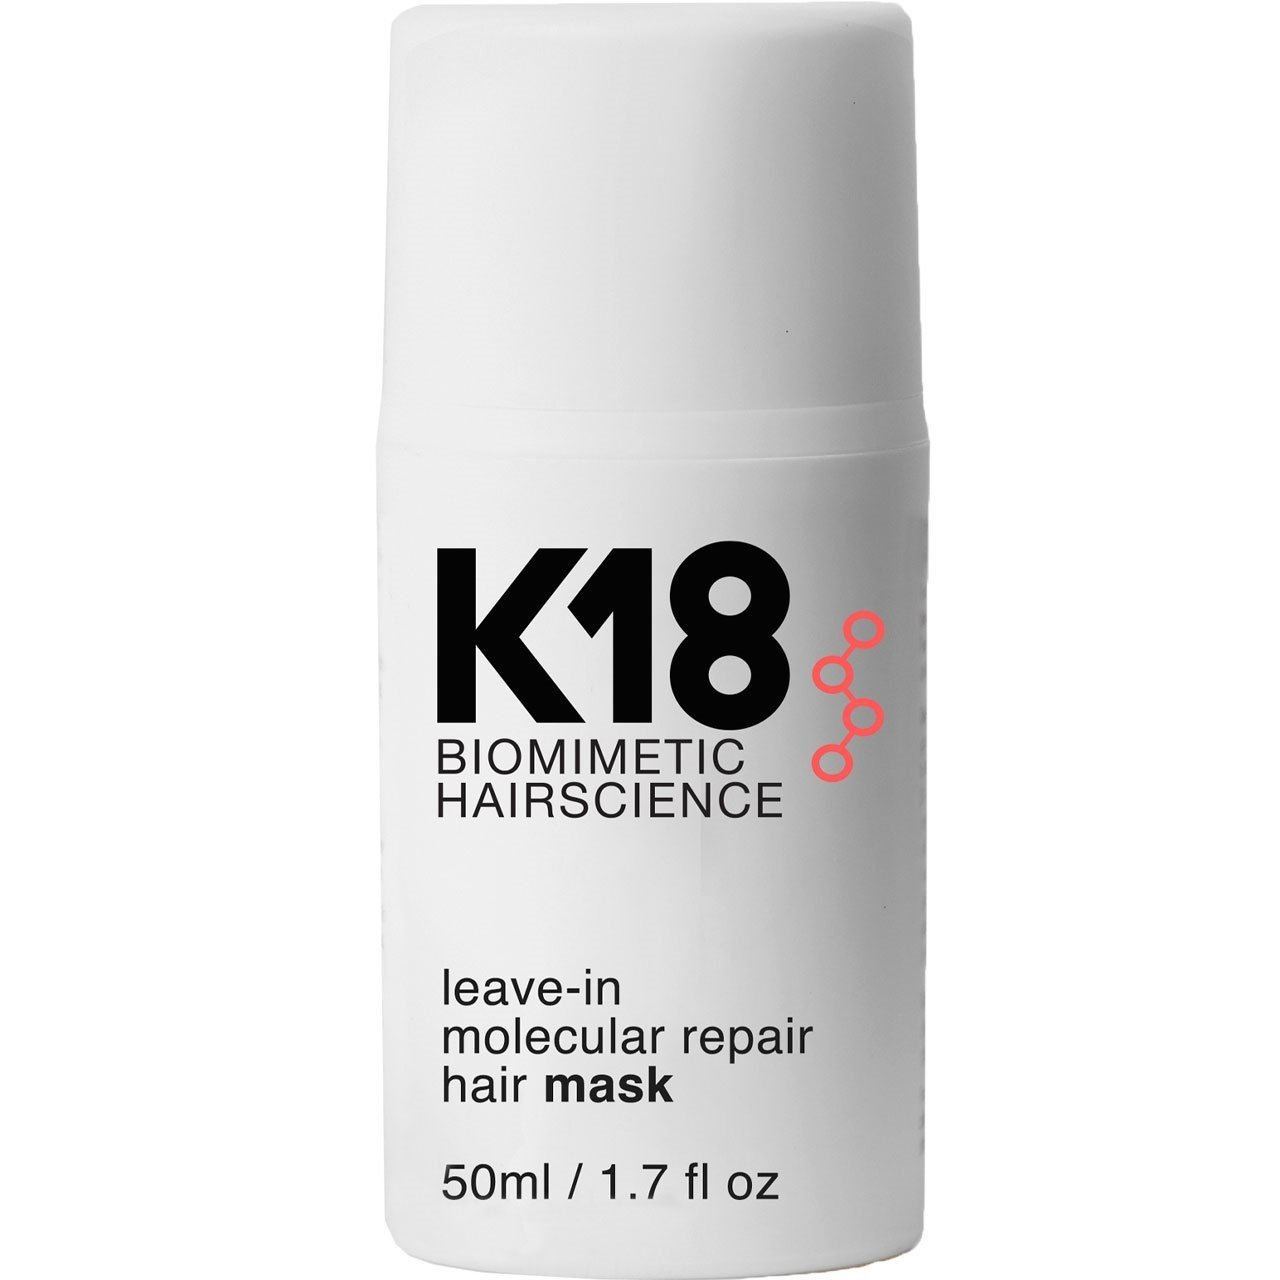 Маска для волос к 18. К18 несмываемая маска для молекулярного восстановления , 50мл. K18 несмываемая маска leave-in Molecular Repair Mask, 50 мл. K18 Molecular Repair hair Mask. K 18 leave Molecular для волос.